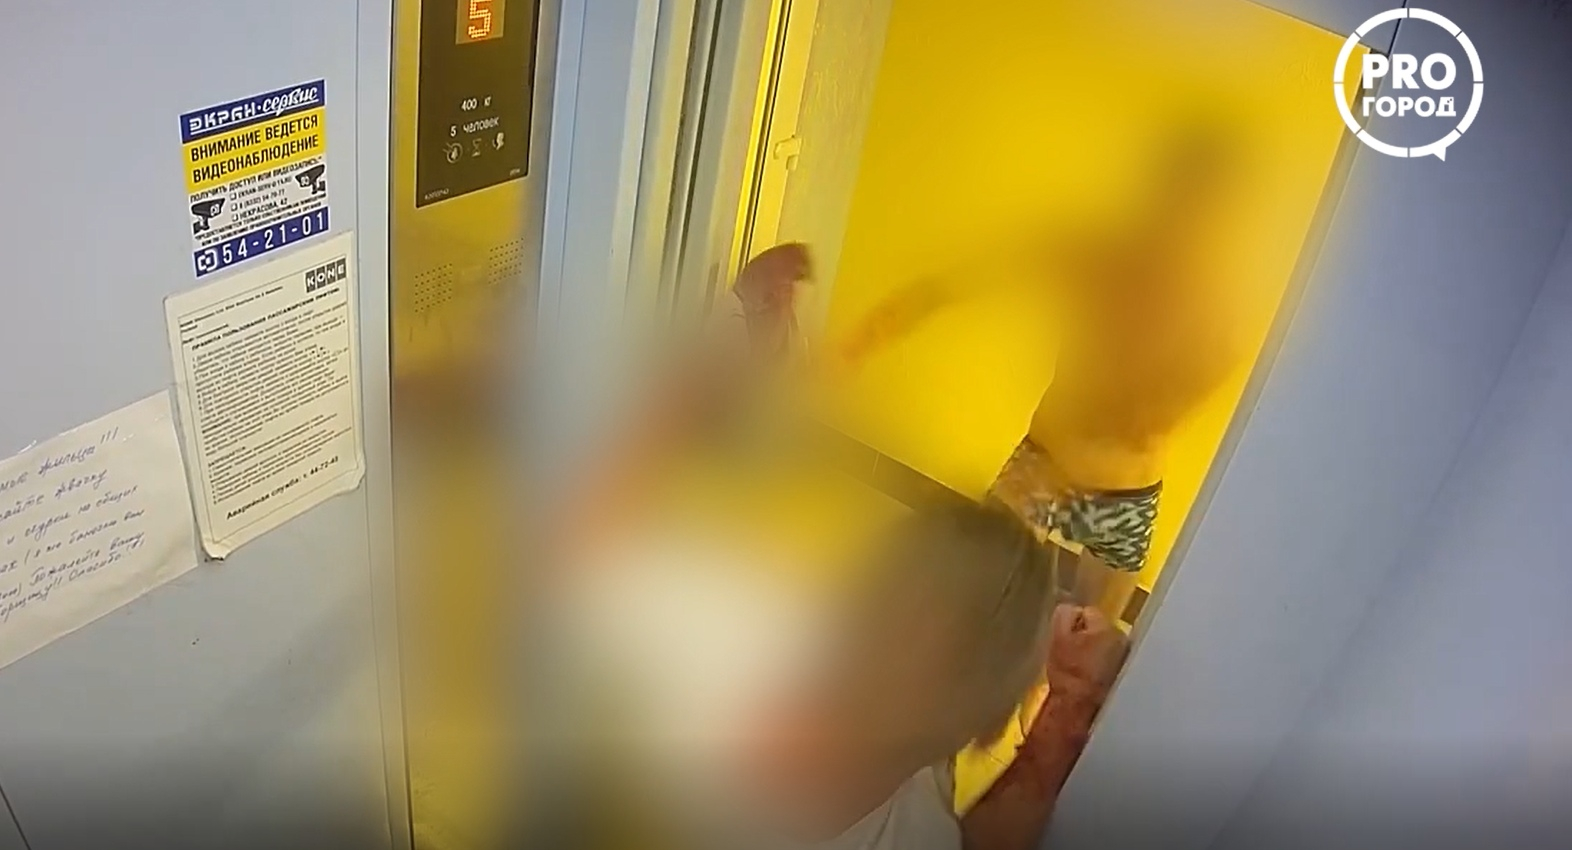 Видео: в Кирове двое окровавленных мужчин устроили драку в лифте